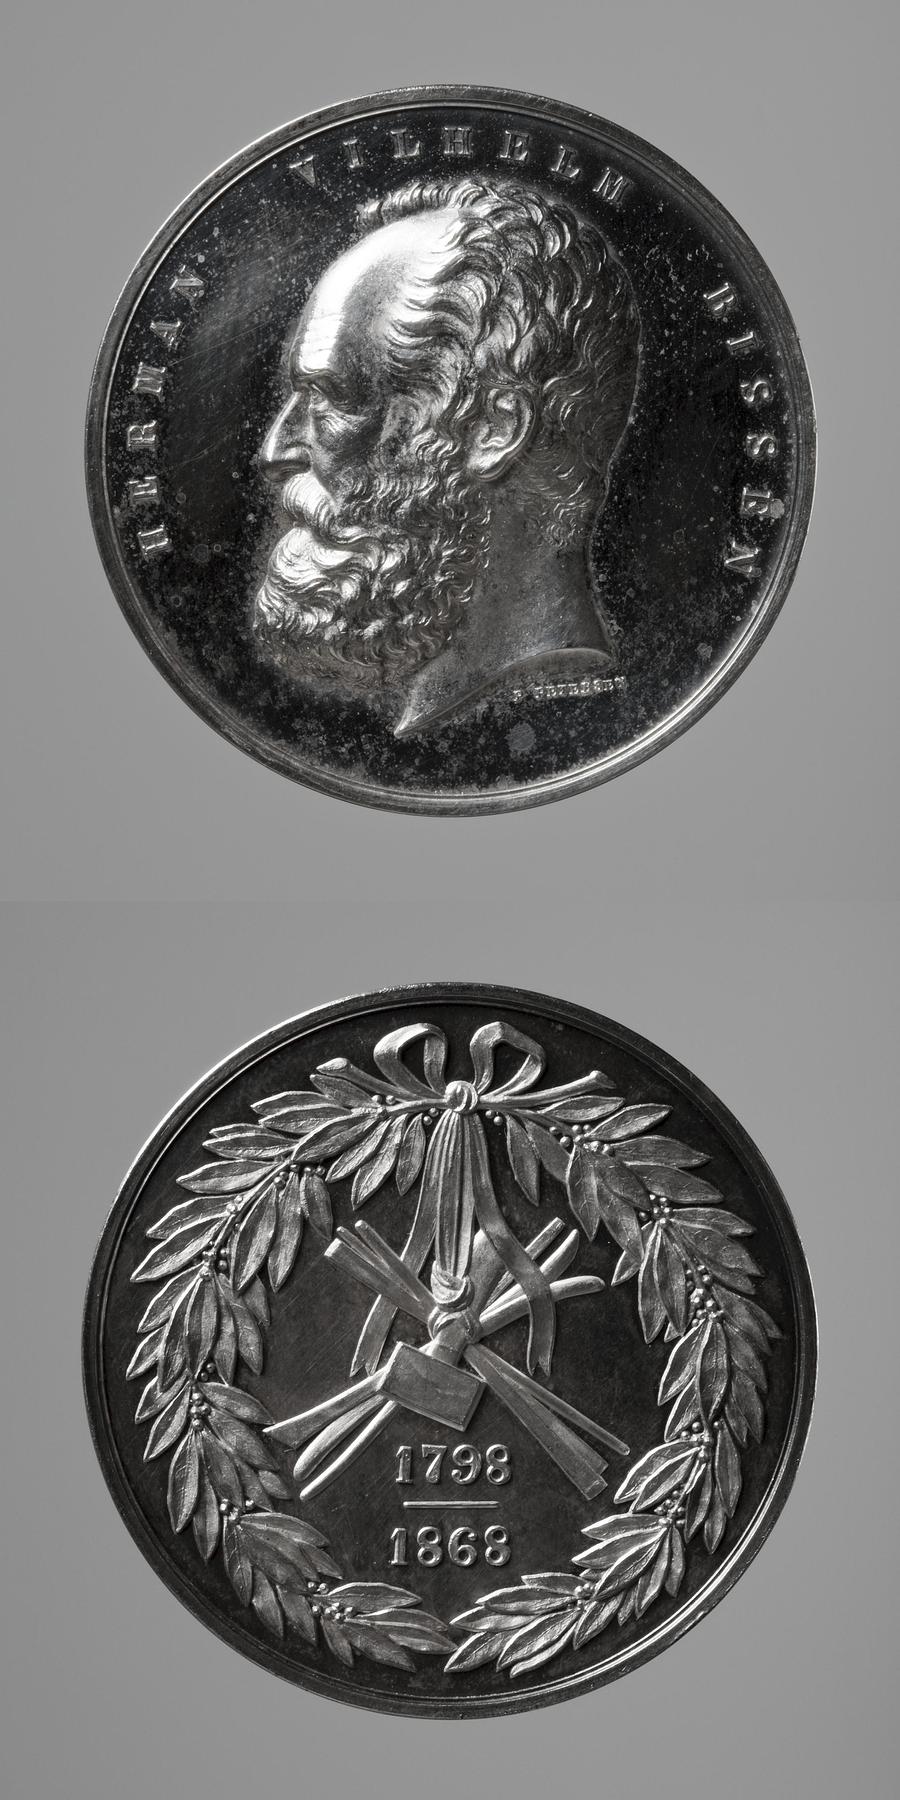 Medaljens forside: H.W. Bissen. Medaljens bagside: Laurbærkrans og billedhuggerredskaber, F146